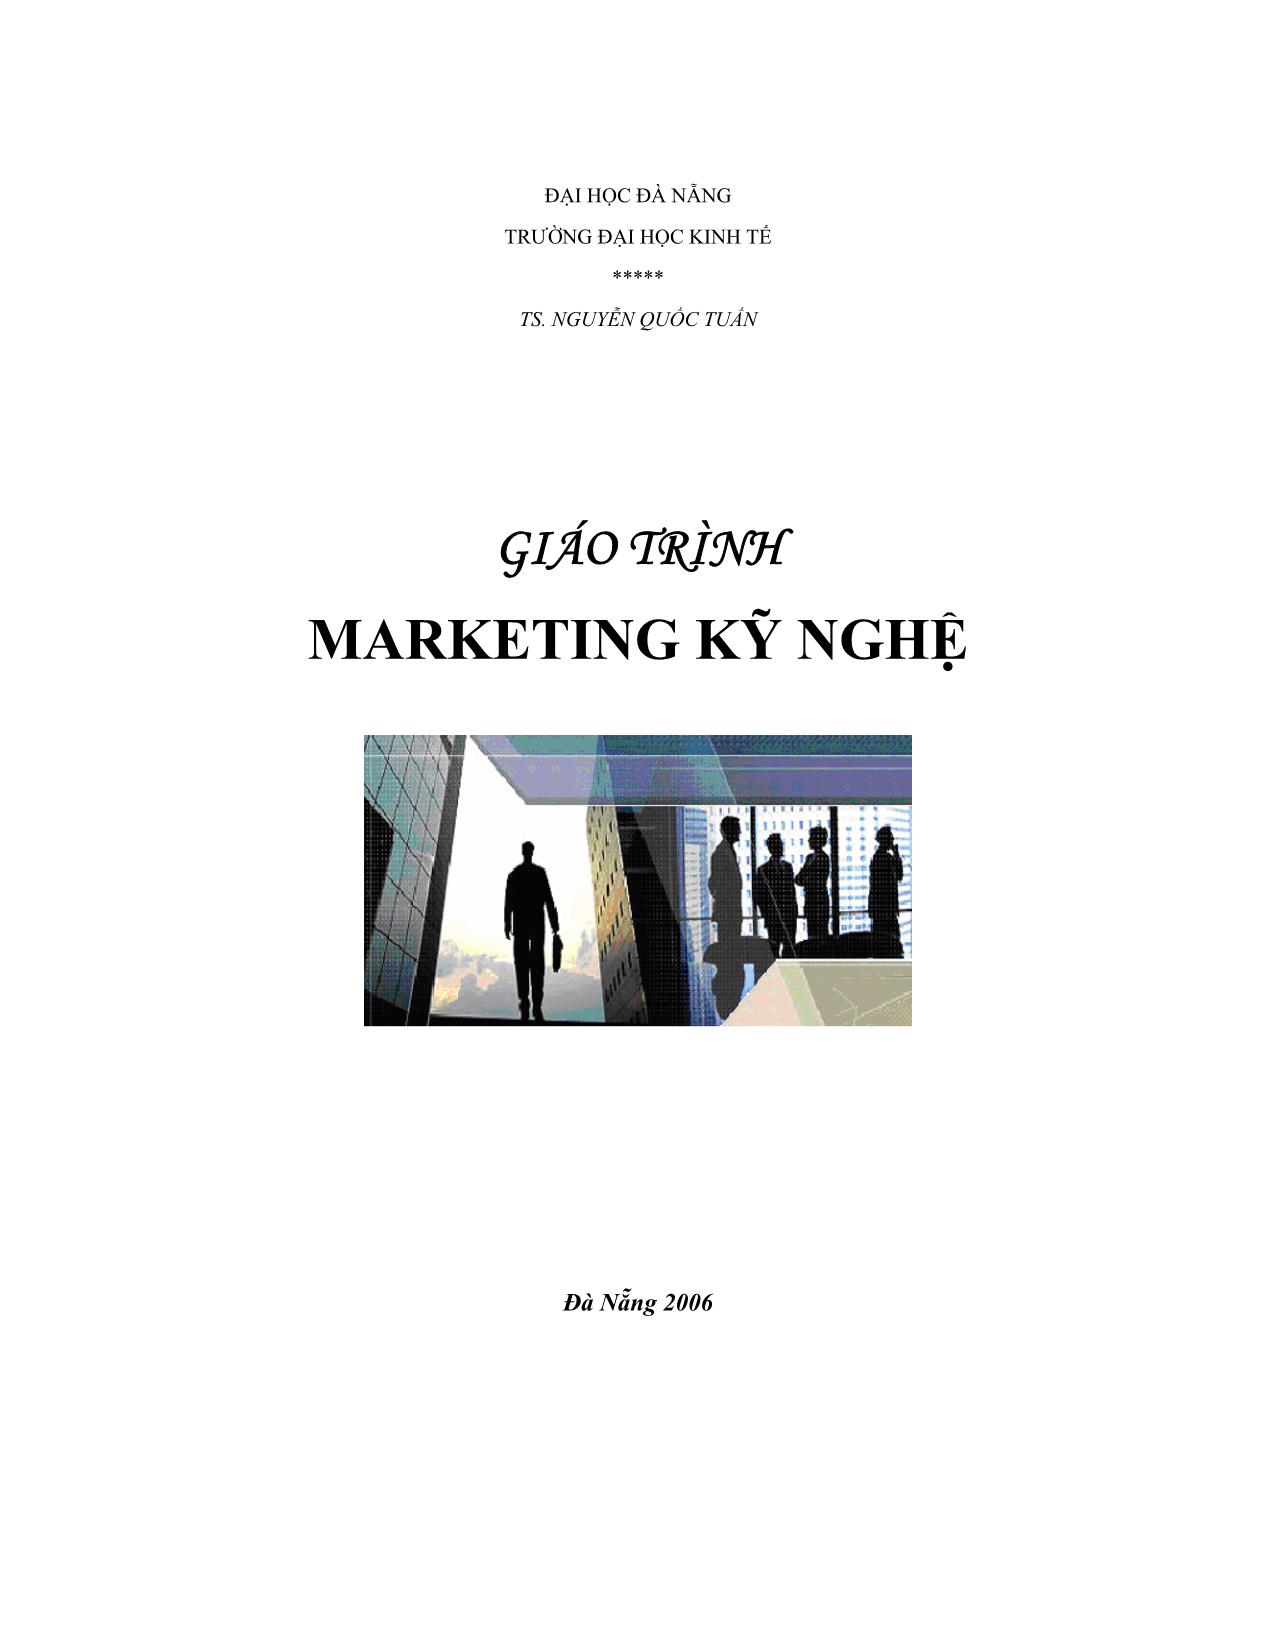 Giáo trình Marketing kỹ nghệ trang 1